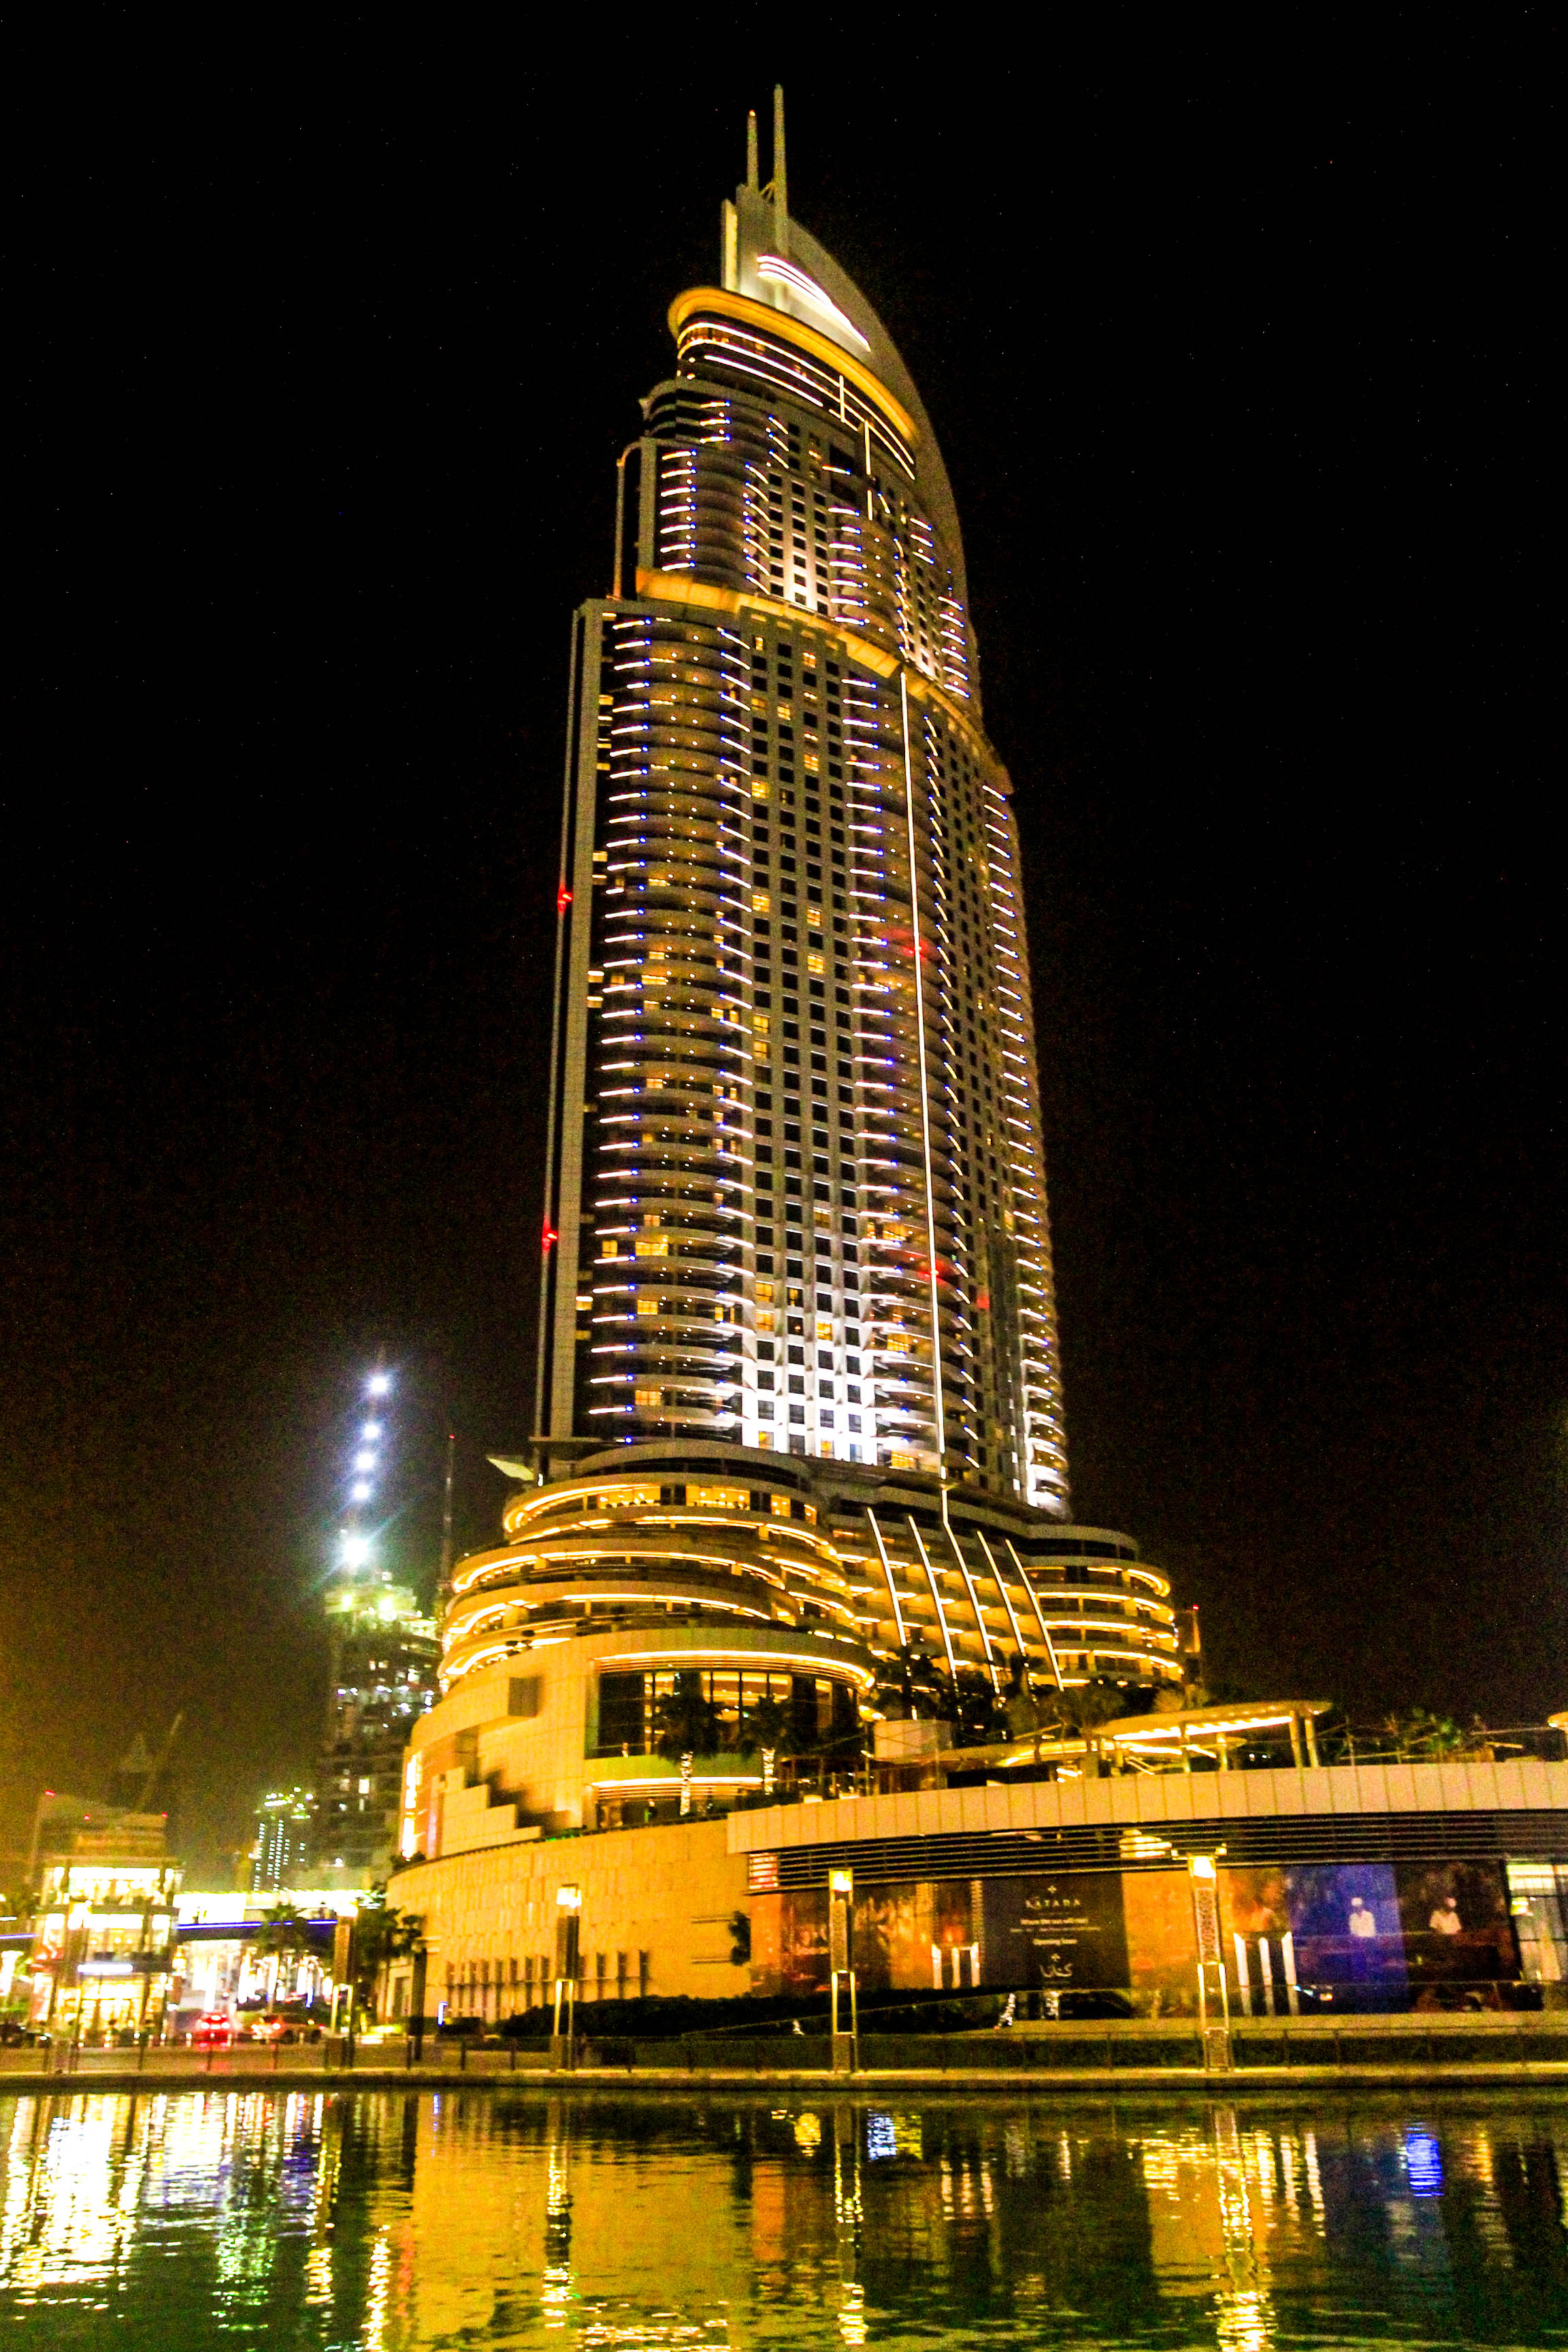 土豪国迪拜的世界第一高楼:夜景真的无与伦比